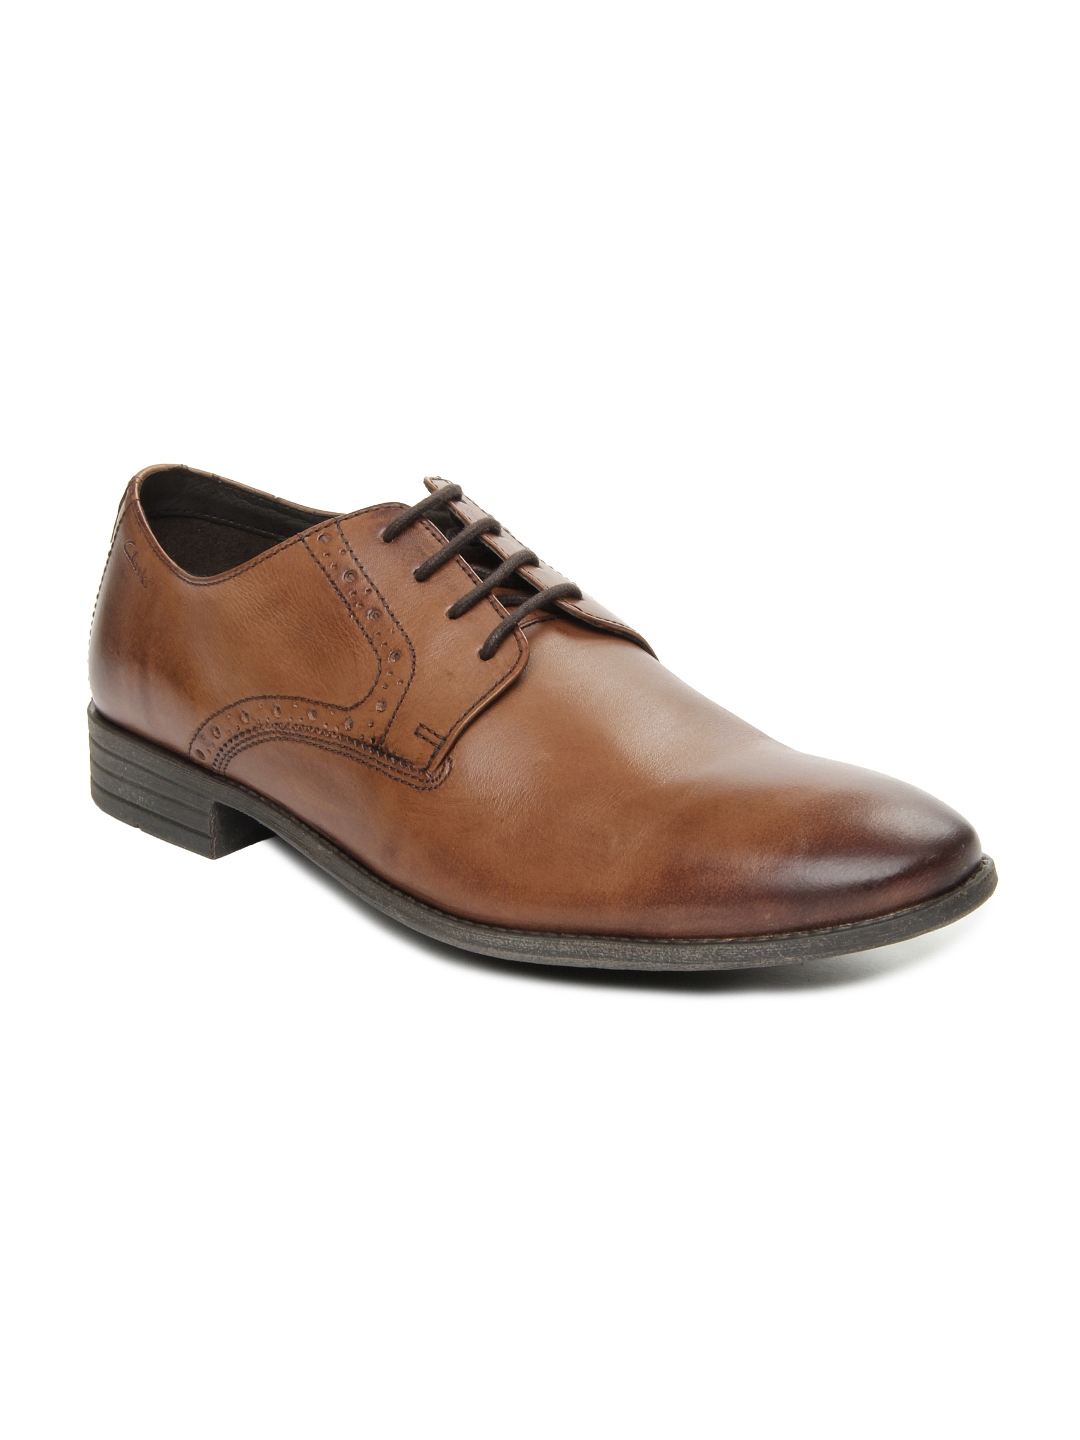 Buy Clarks Men Brown Leather Formal Shoes - Formal Shoes for Men 257332 ...